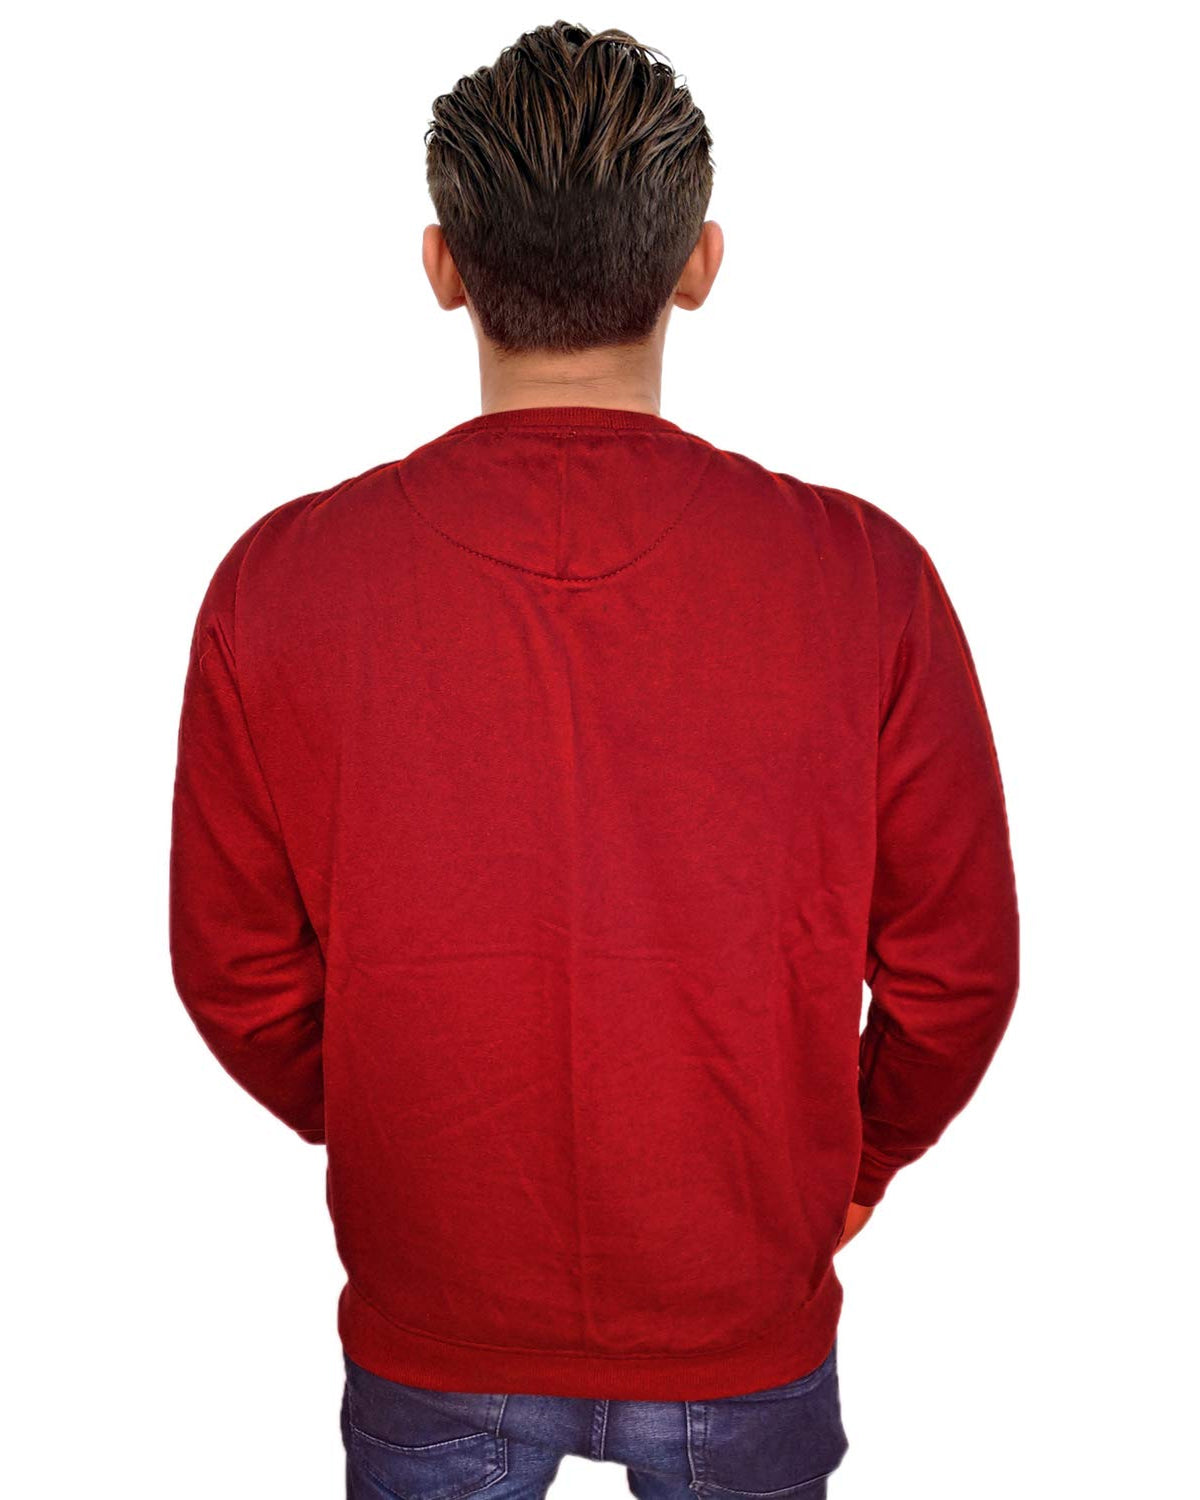 Prokick Men's Round Neck Sweatshirt - Maroon - Best Price online Prokicksports.com